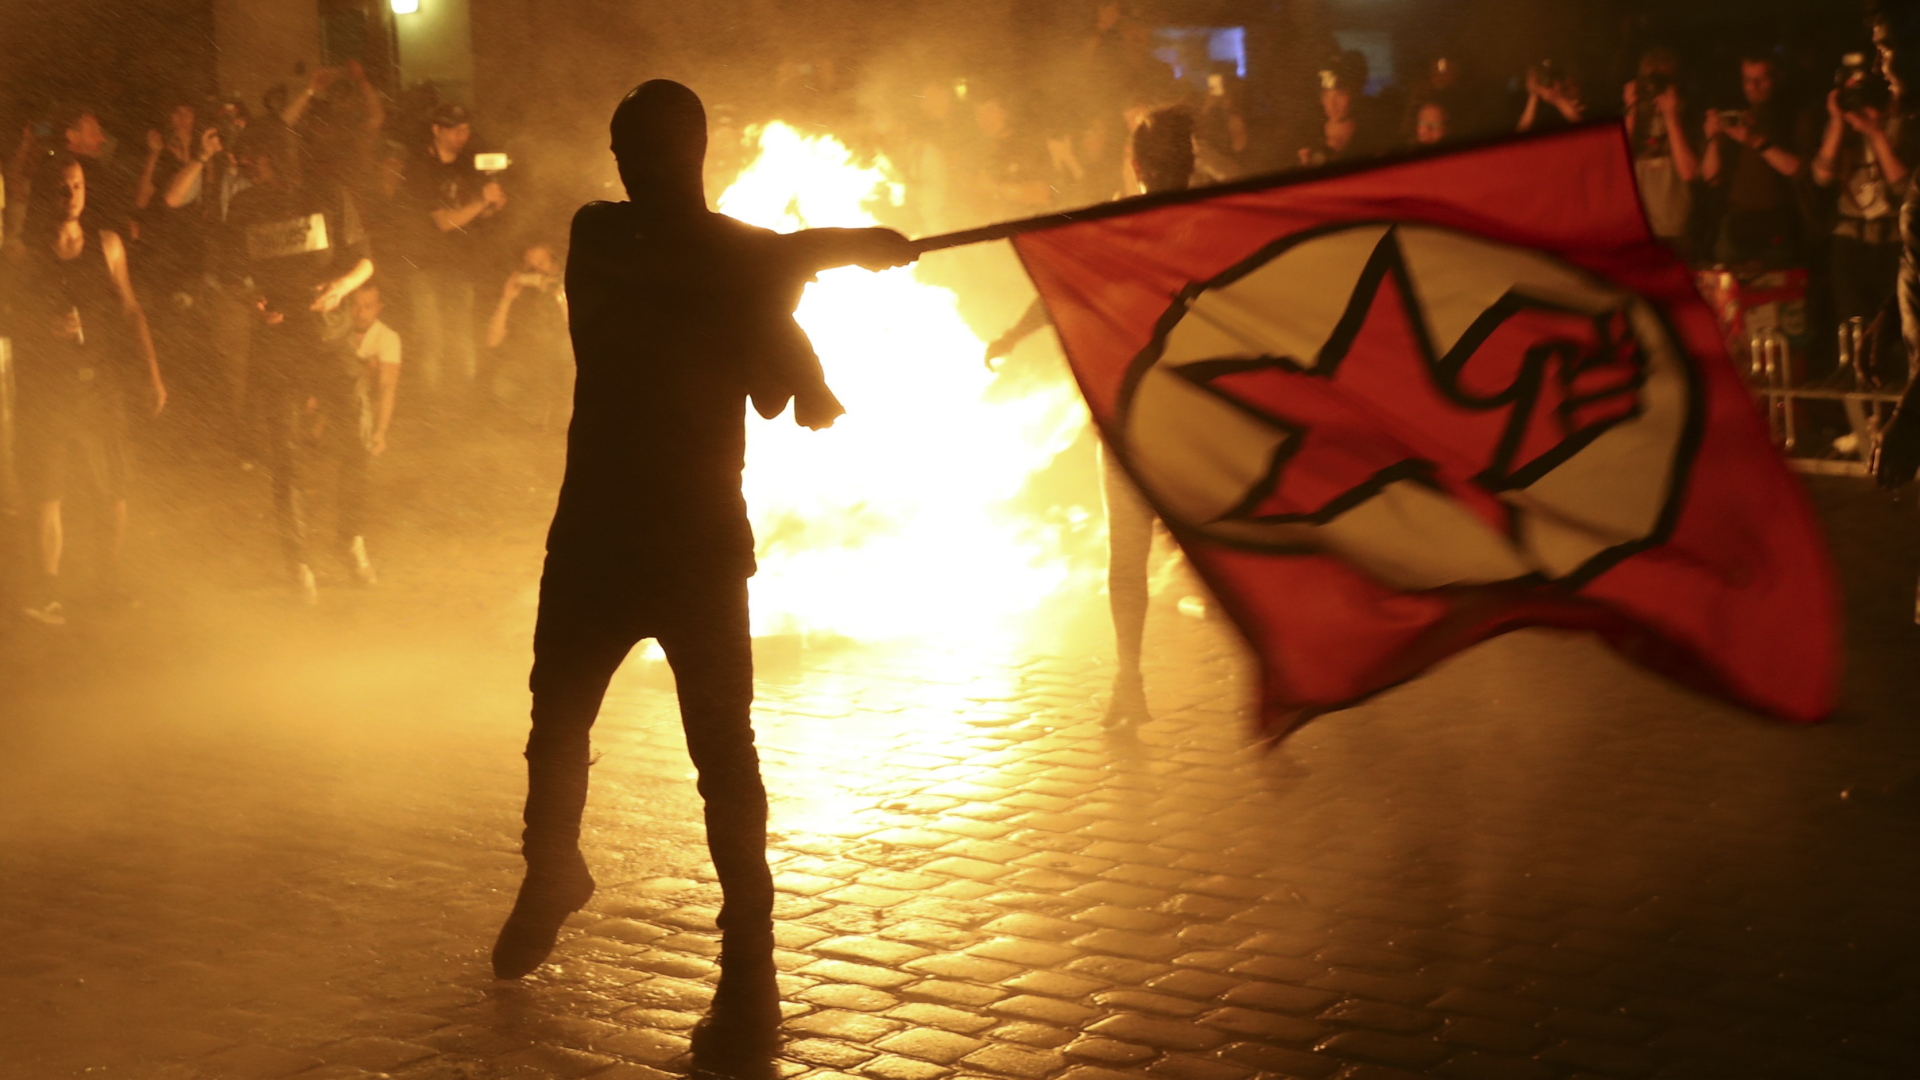 Ein Demonstrant schwingt vor brennenden Barrikaden eine Protestflagge. | REUTERS